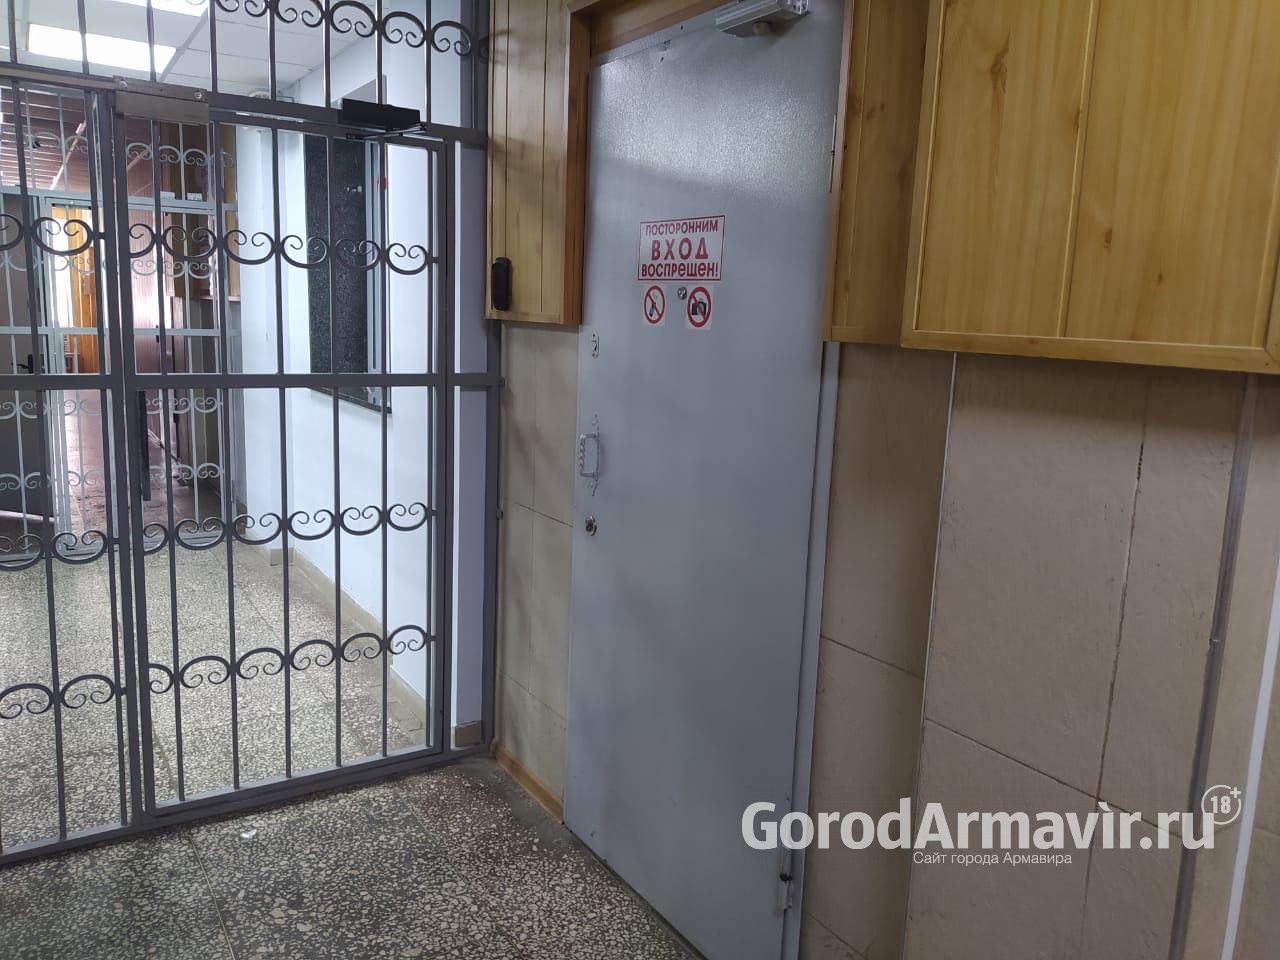 Наркоман из Армавира обворовал гаражи в соседнем районе на 45 тыс руб 